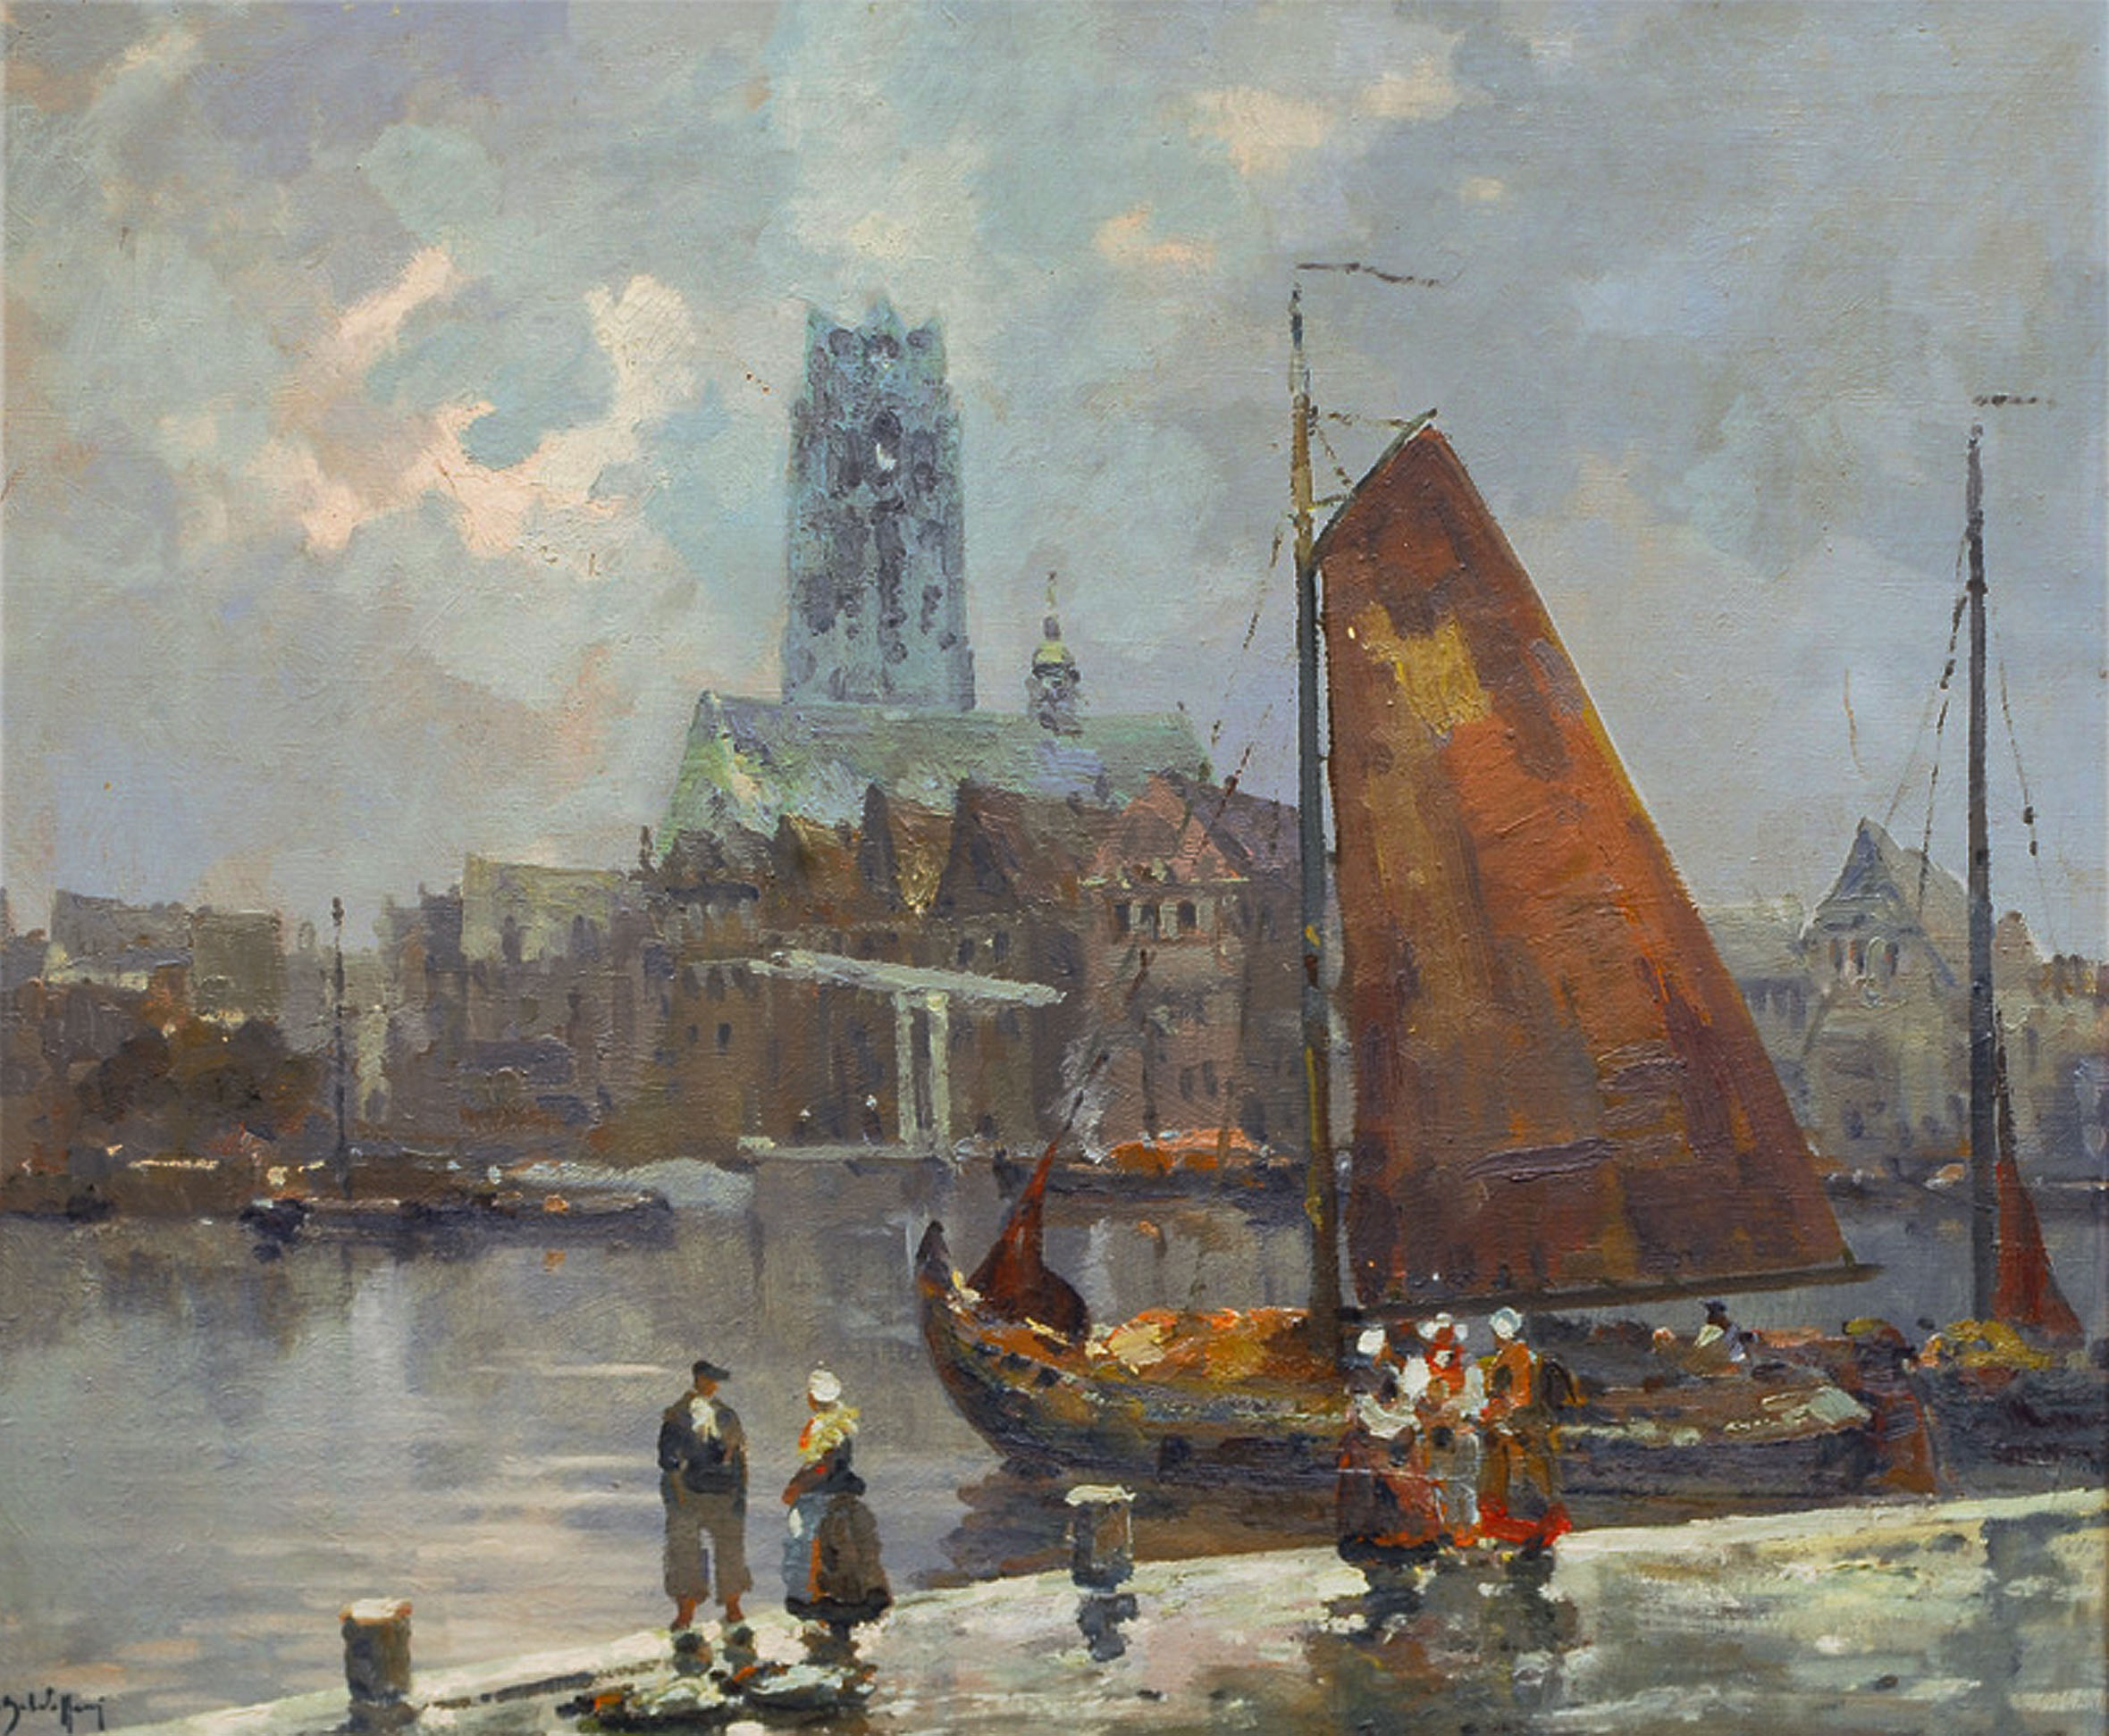 The harbour of Dordrecht